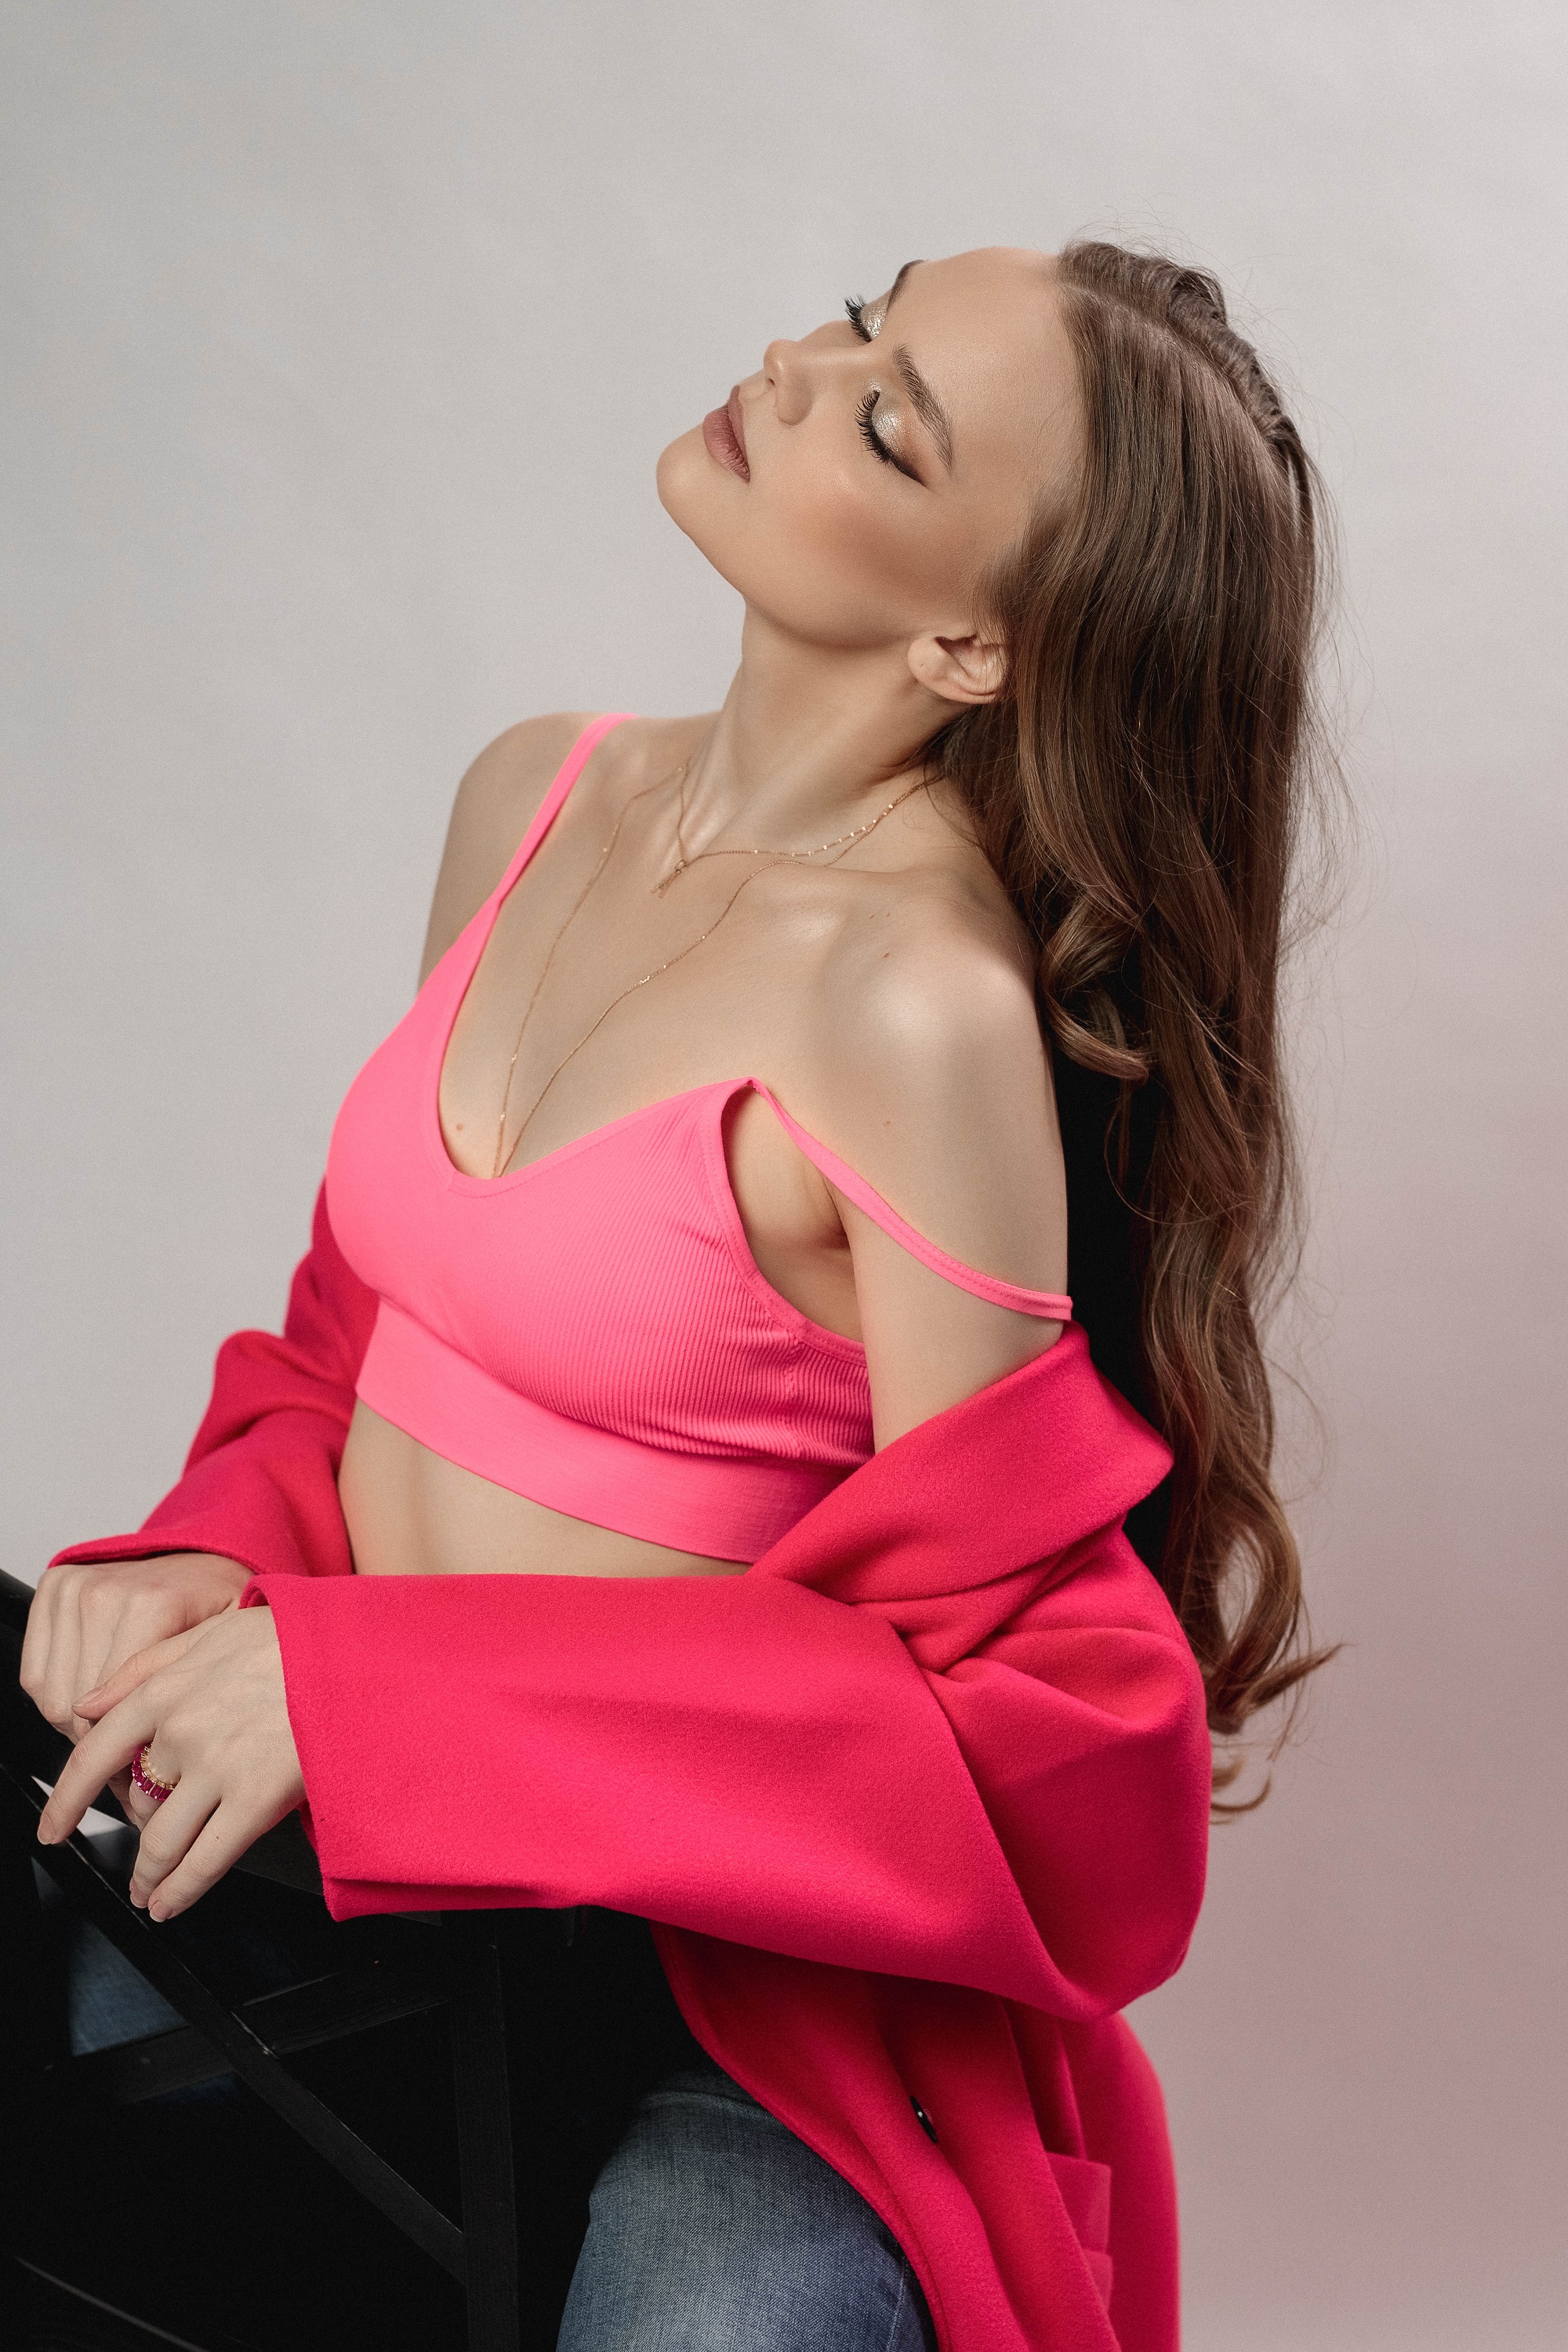 Vladimir Vasilev Women Tank Top Pink Clothing Makeup Studio 2000x3000